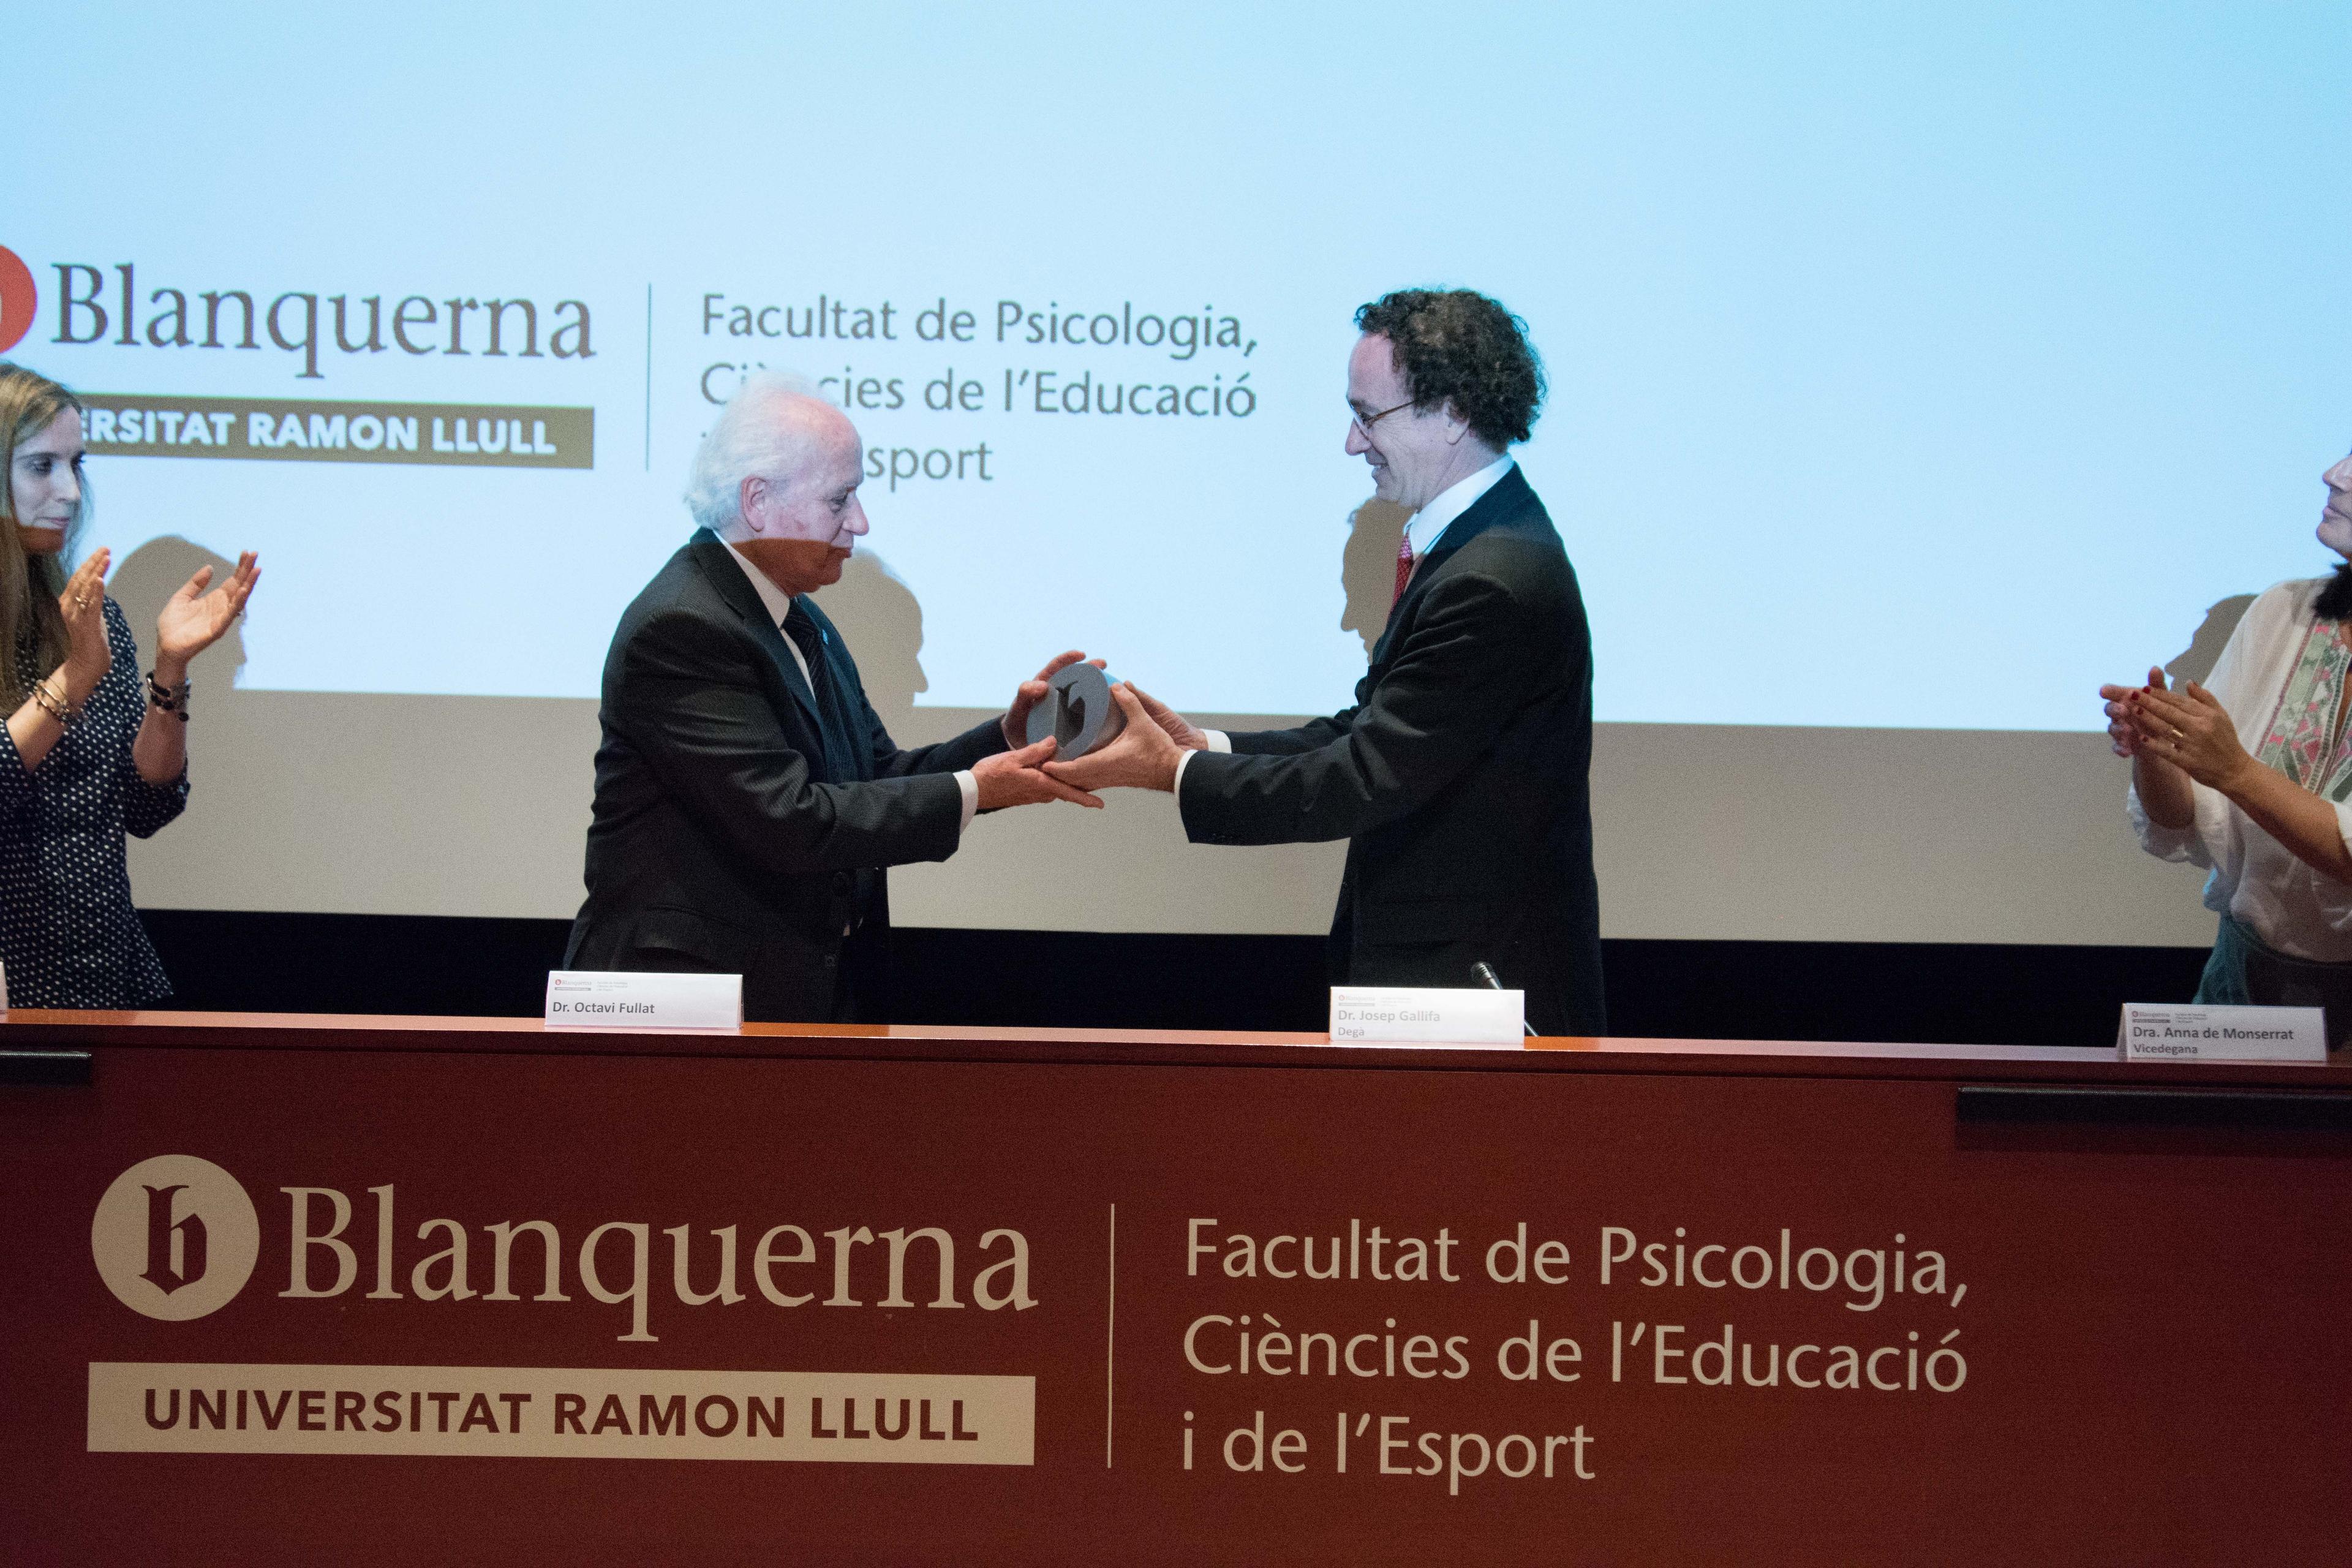 El Dr. Josep Gallifa entrega el Premio Blanquerna Educación al Dr. Octavi Fullat